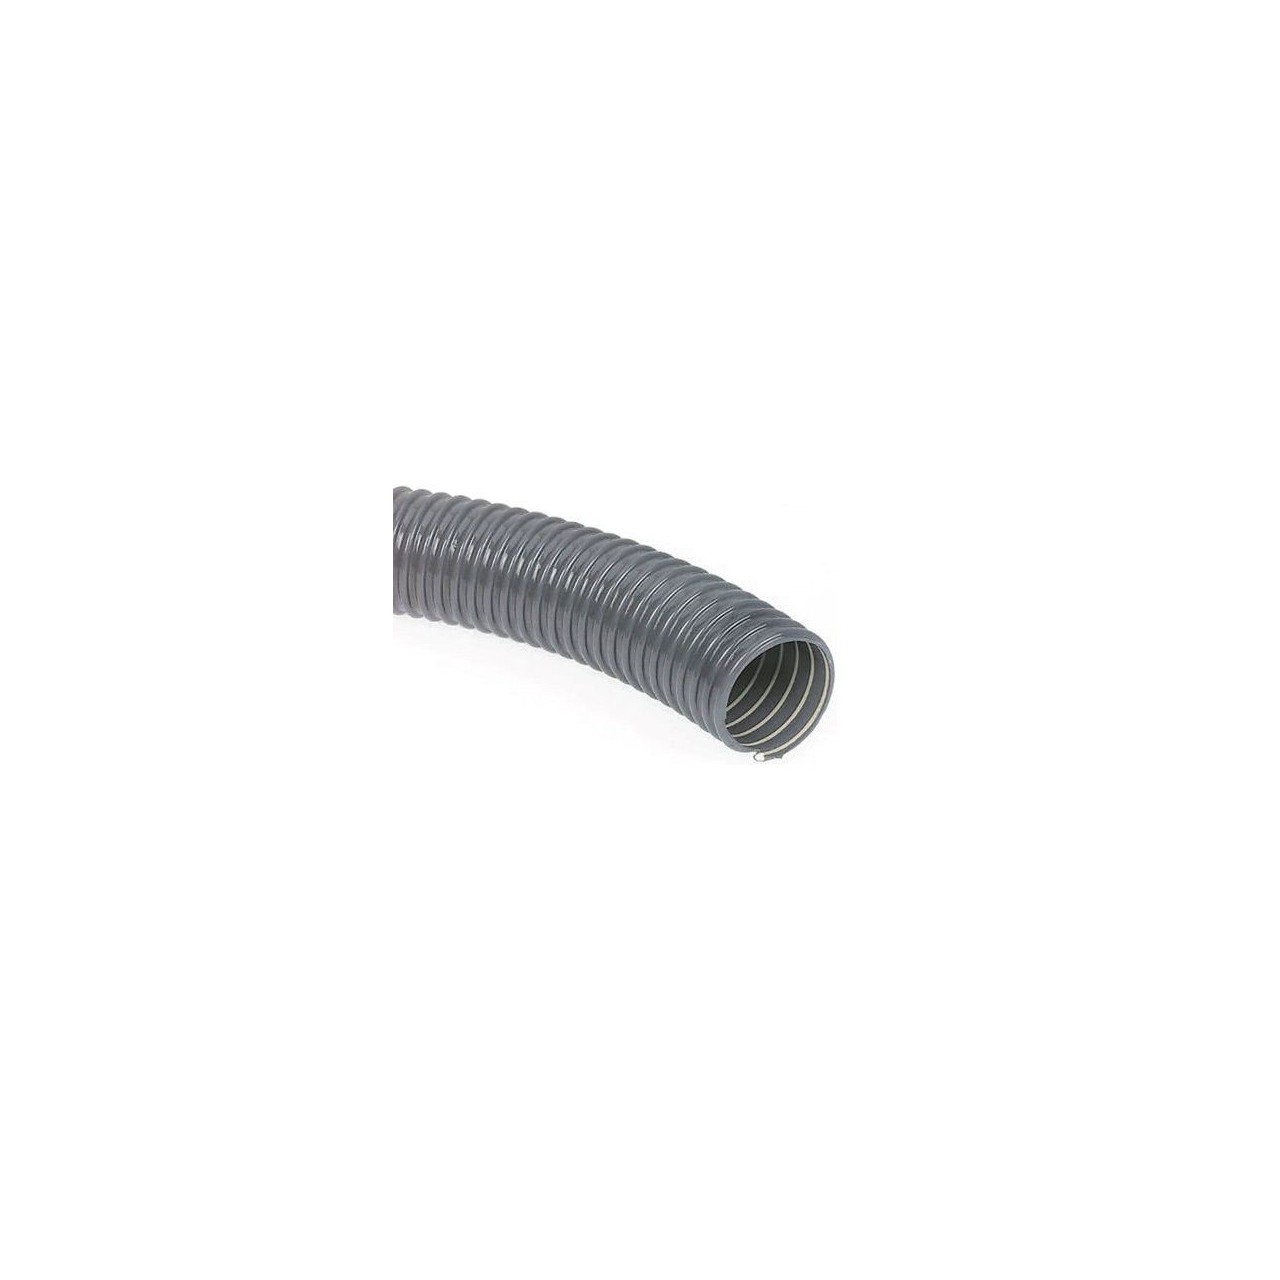 Tubo ventilación PVC flexible (Rollo)